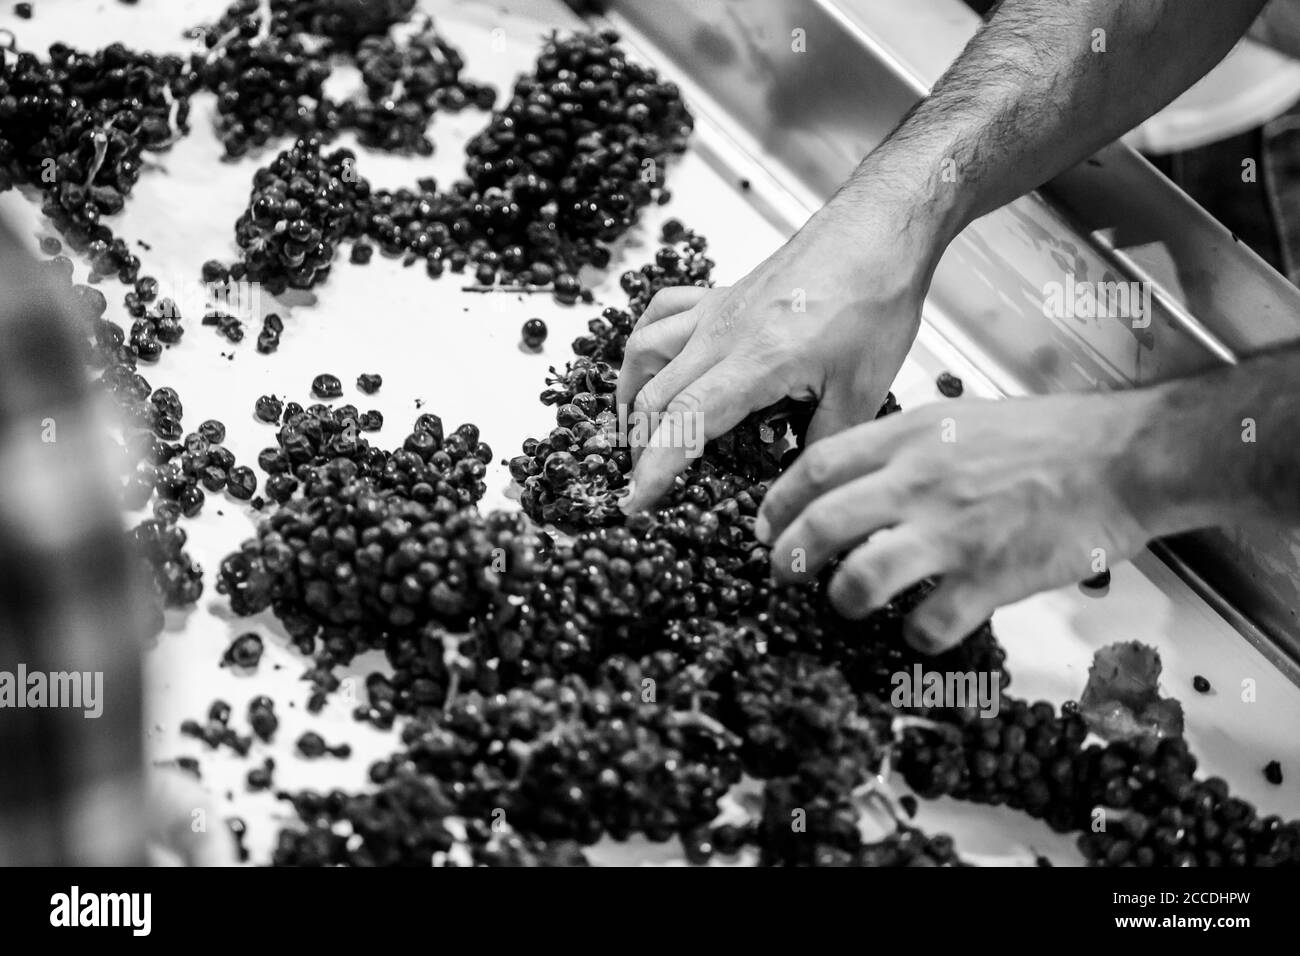 Körniges, kontrastreiches Schwarz-Weiß-Bild von männlichen Händen, die Weintrauben auf einem Förderband sortieren. Stockfoto